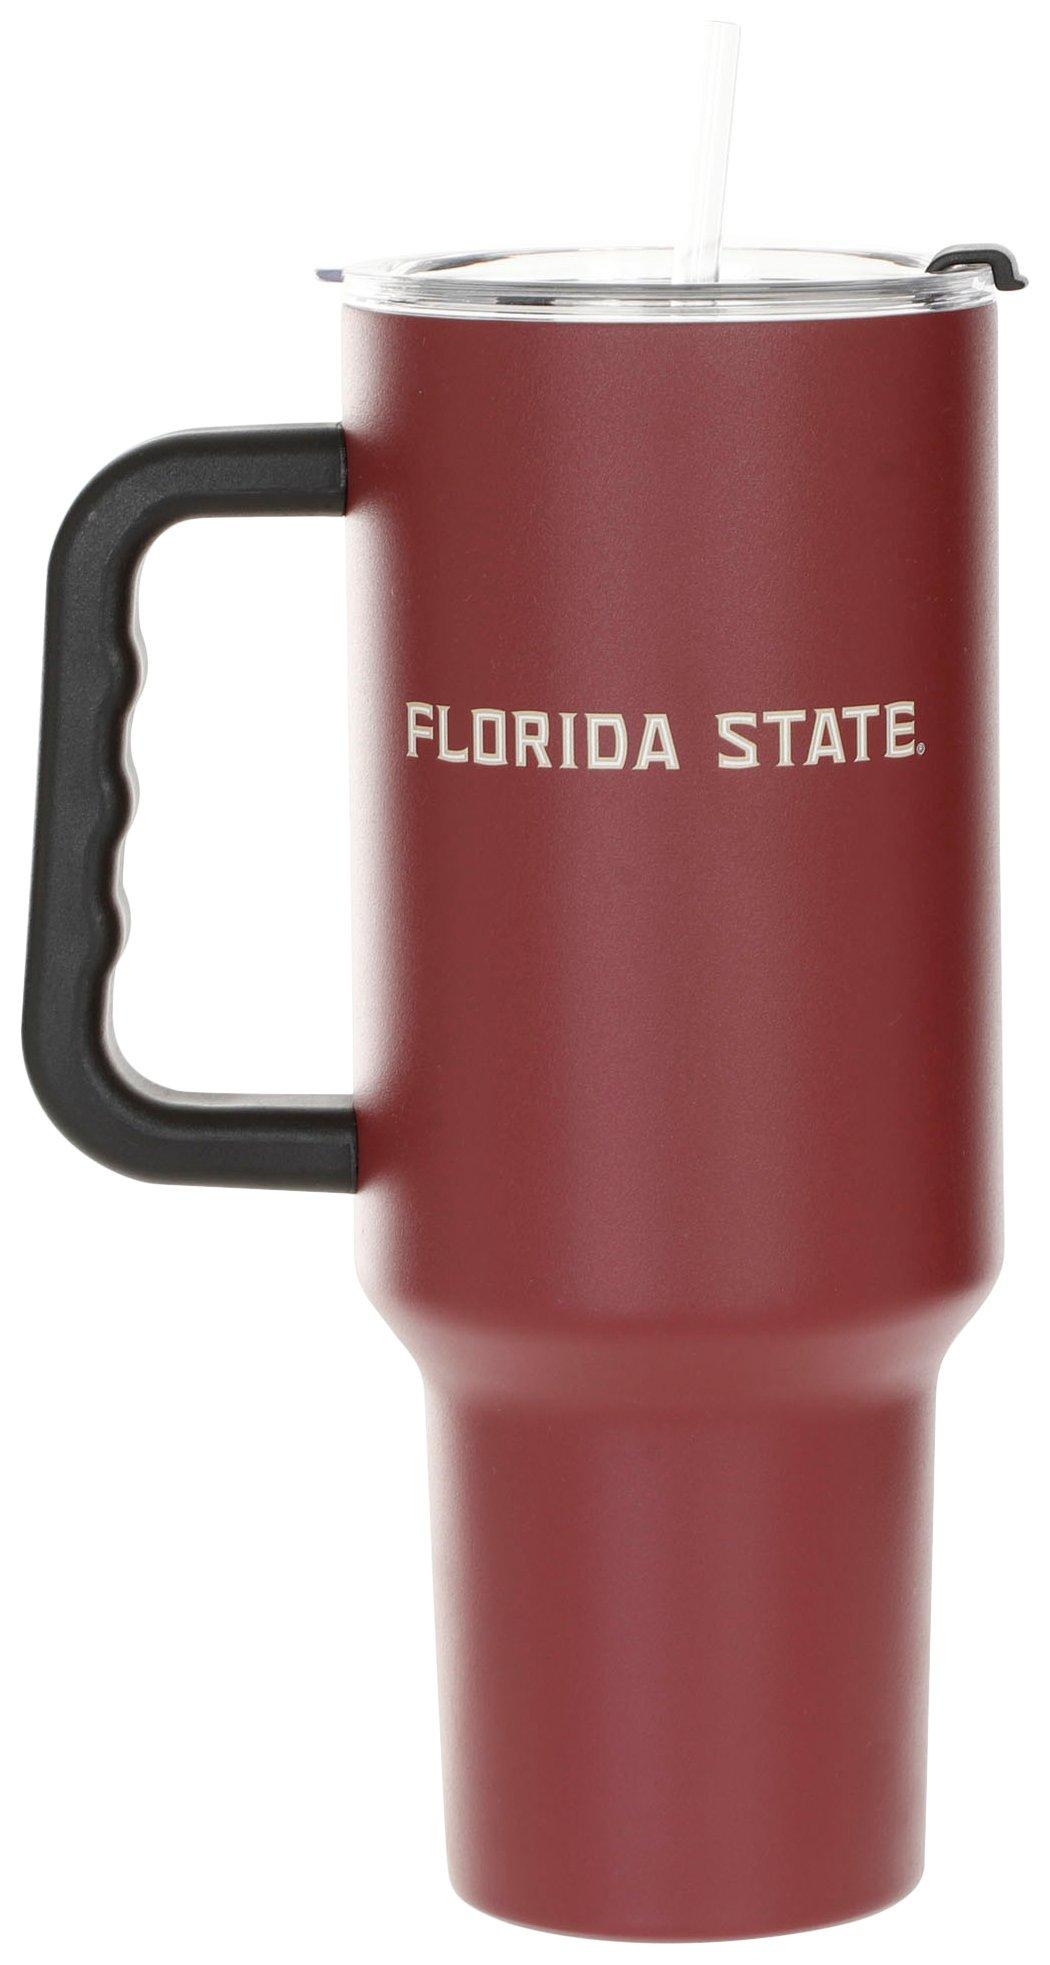 Florida State 40 oz. Stainless Steel Powder Coat Mug